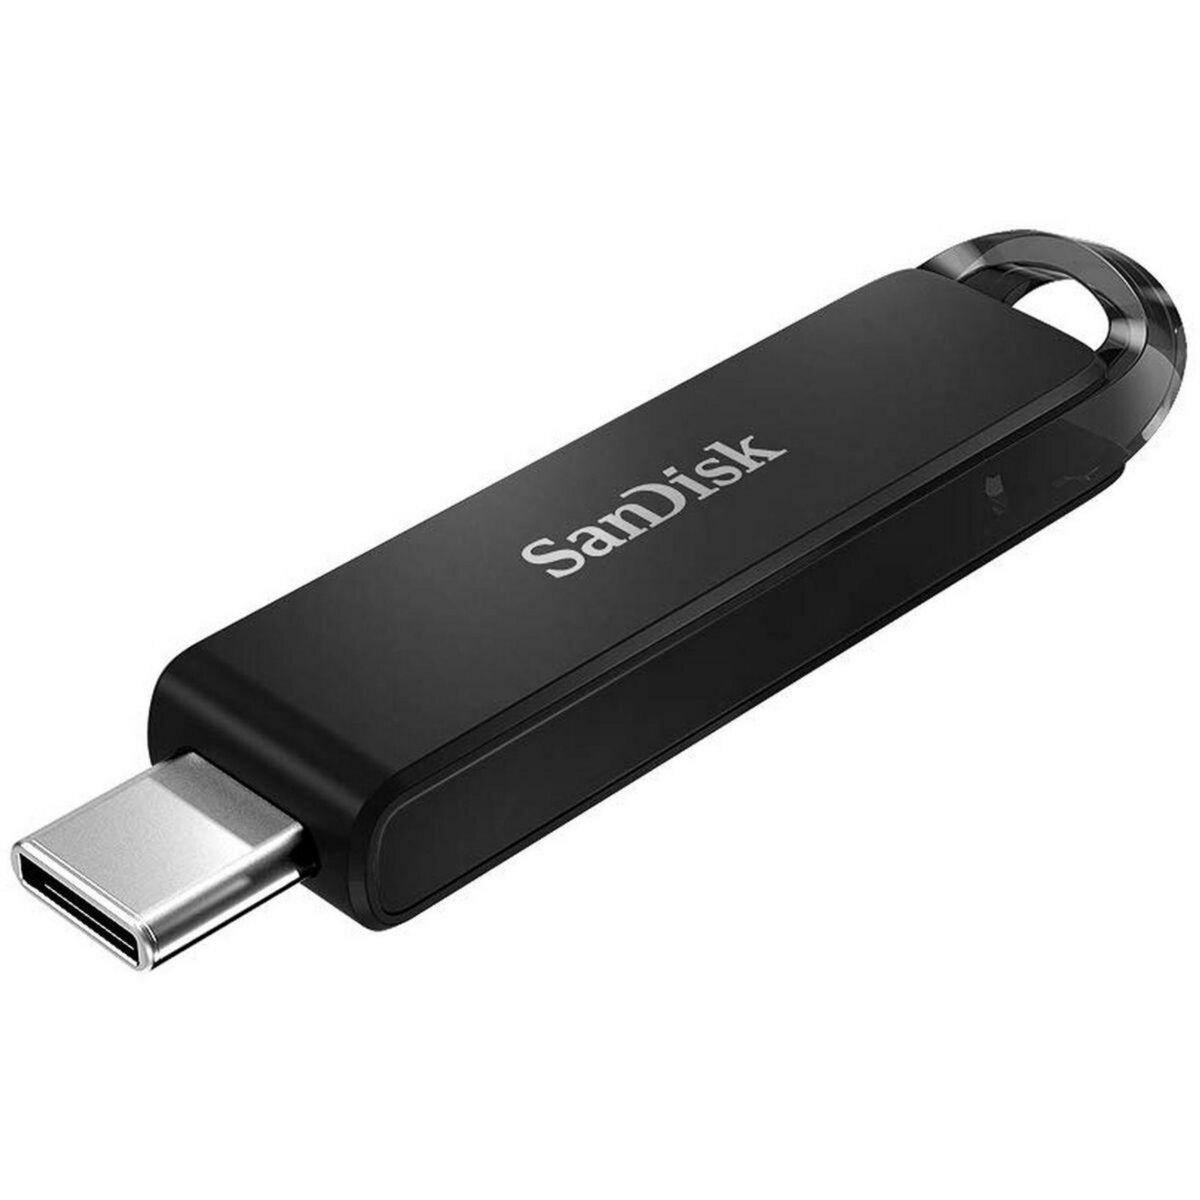 SANDISK Clé USB 128GO Ultra USB Type-C Flash Drive pas cher 